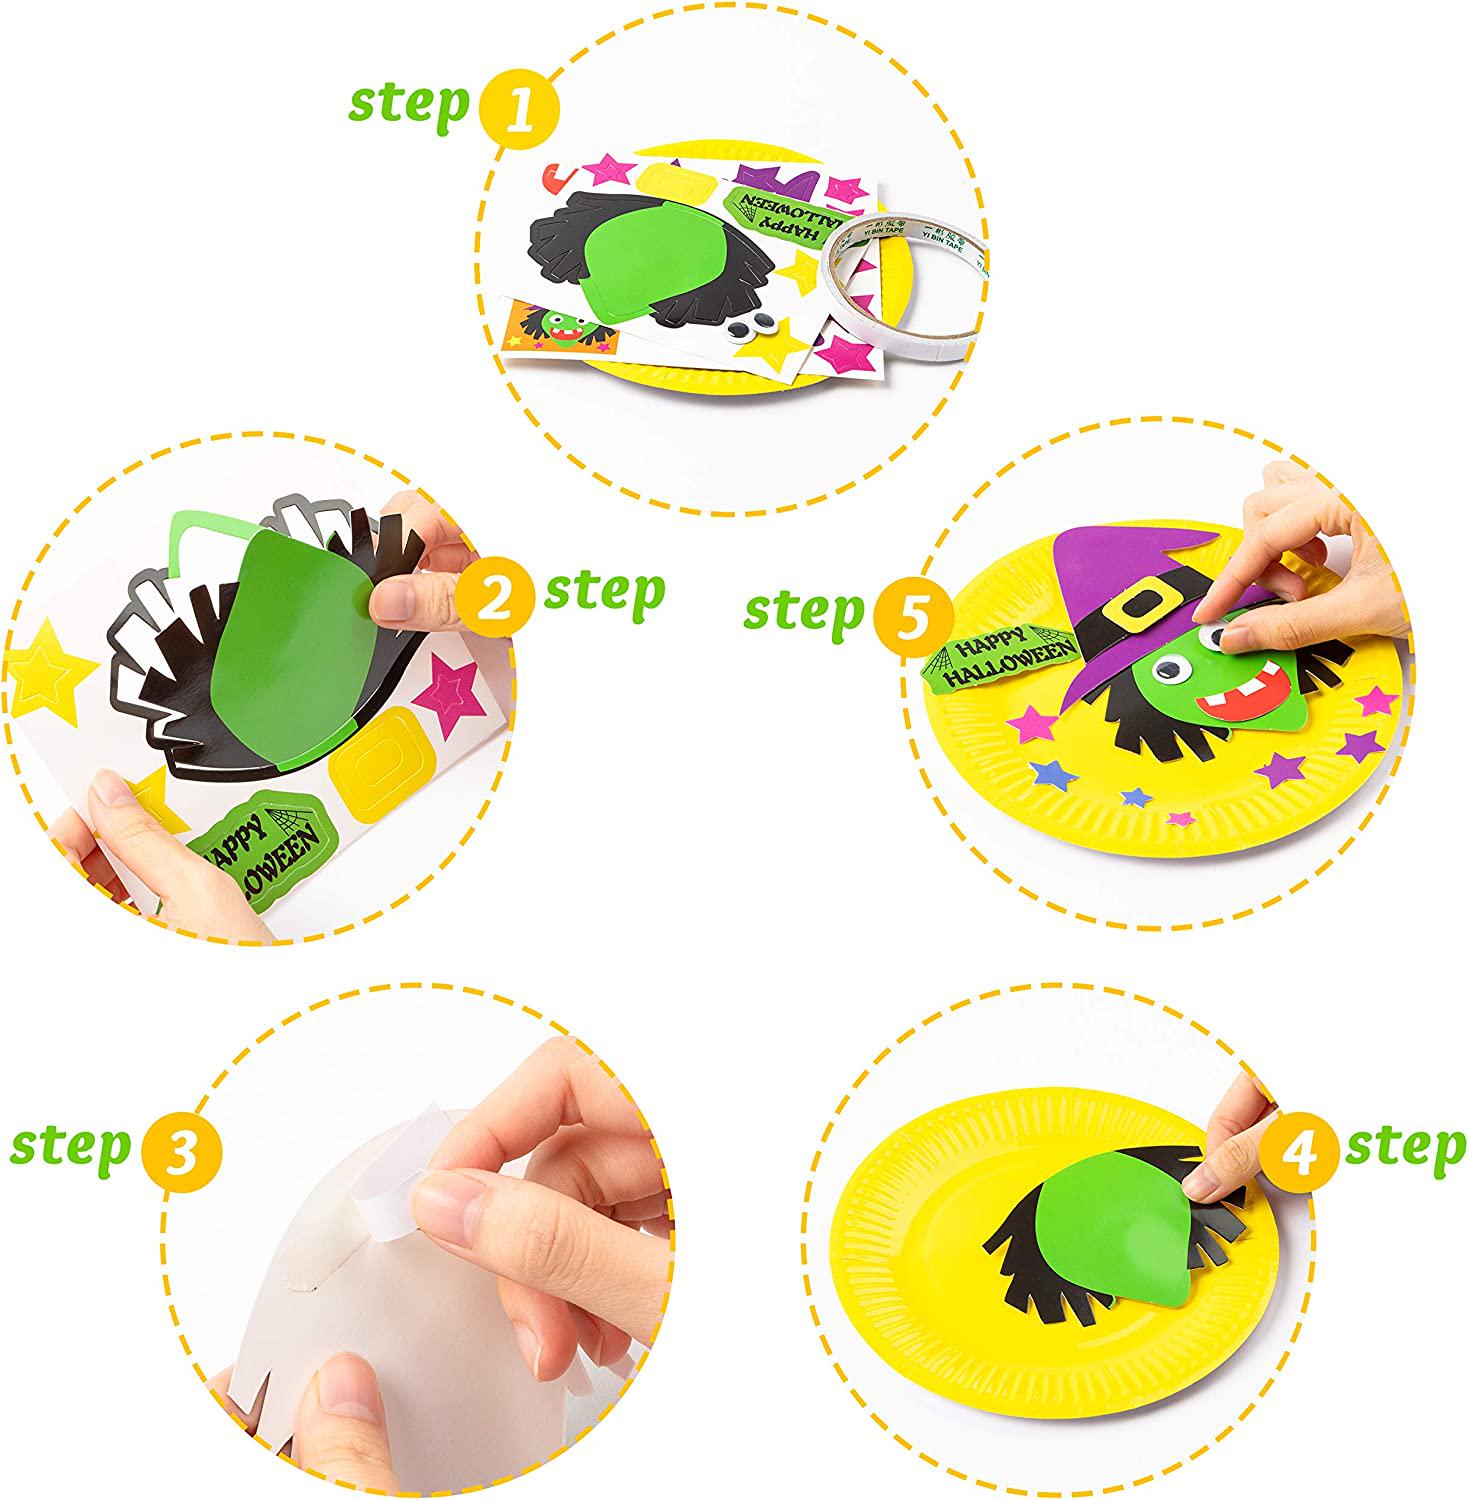 MALLMALL6, MALLMALL6 9Pcs Halloween Paper Plate Art Kits for Kids DIY Craft Sticker Card Games Activity Handmade 3D Pumpkin with Body Paper Crafts Project Classroom Supplies for Preschool Toddler Boys Girls